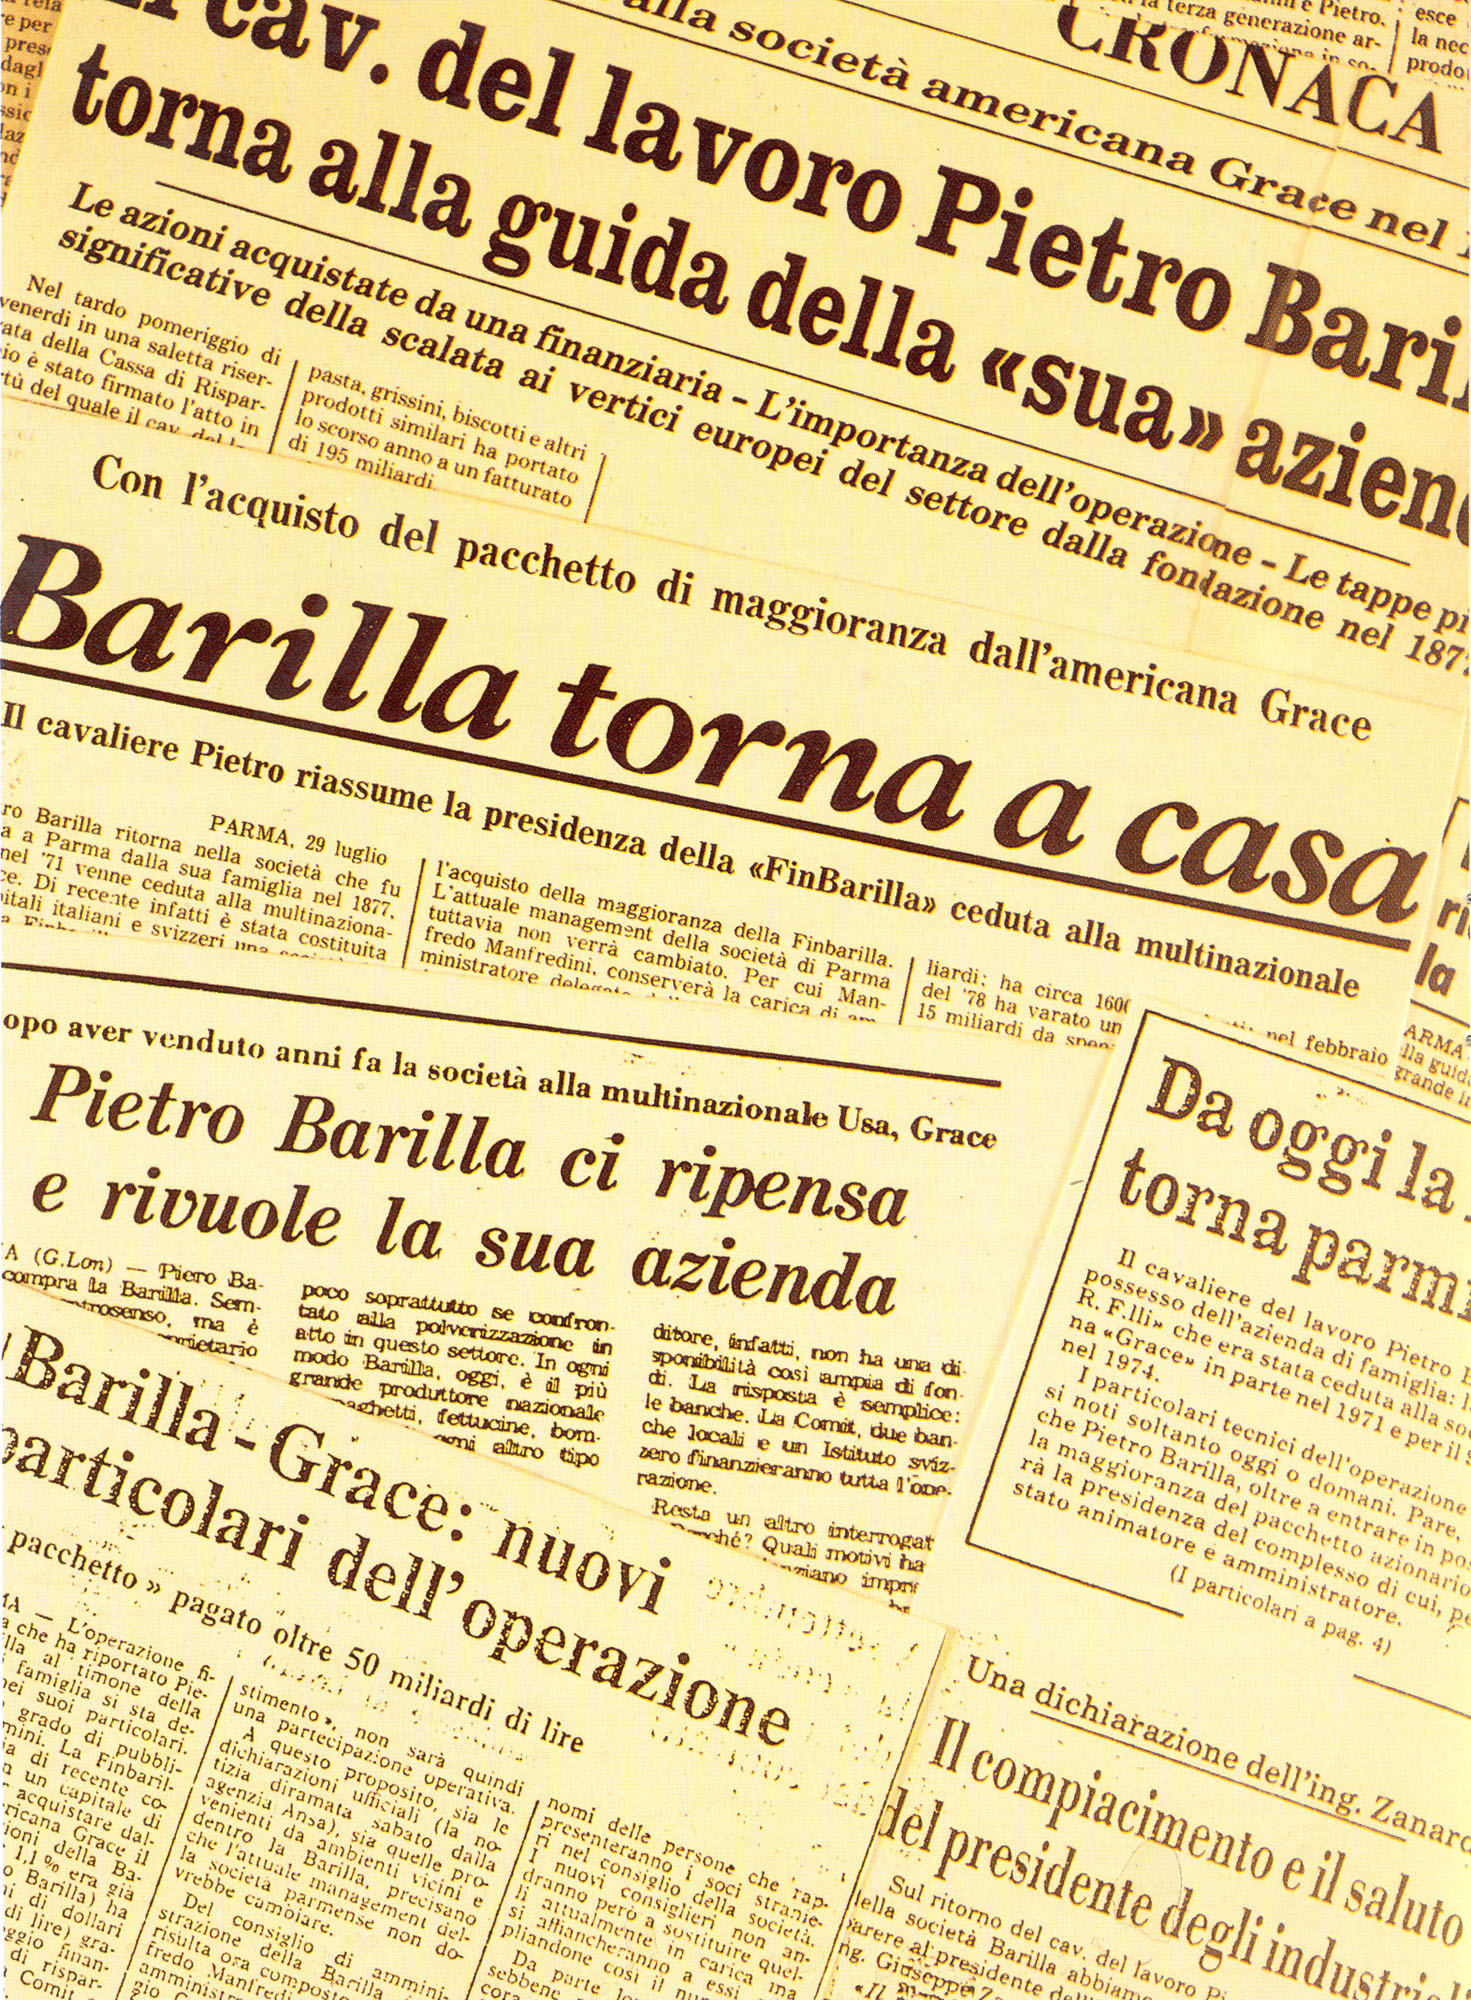 1979 - Pietro Barilla buys back the family Company